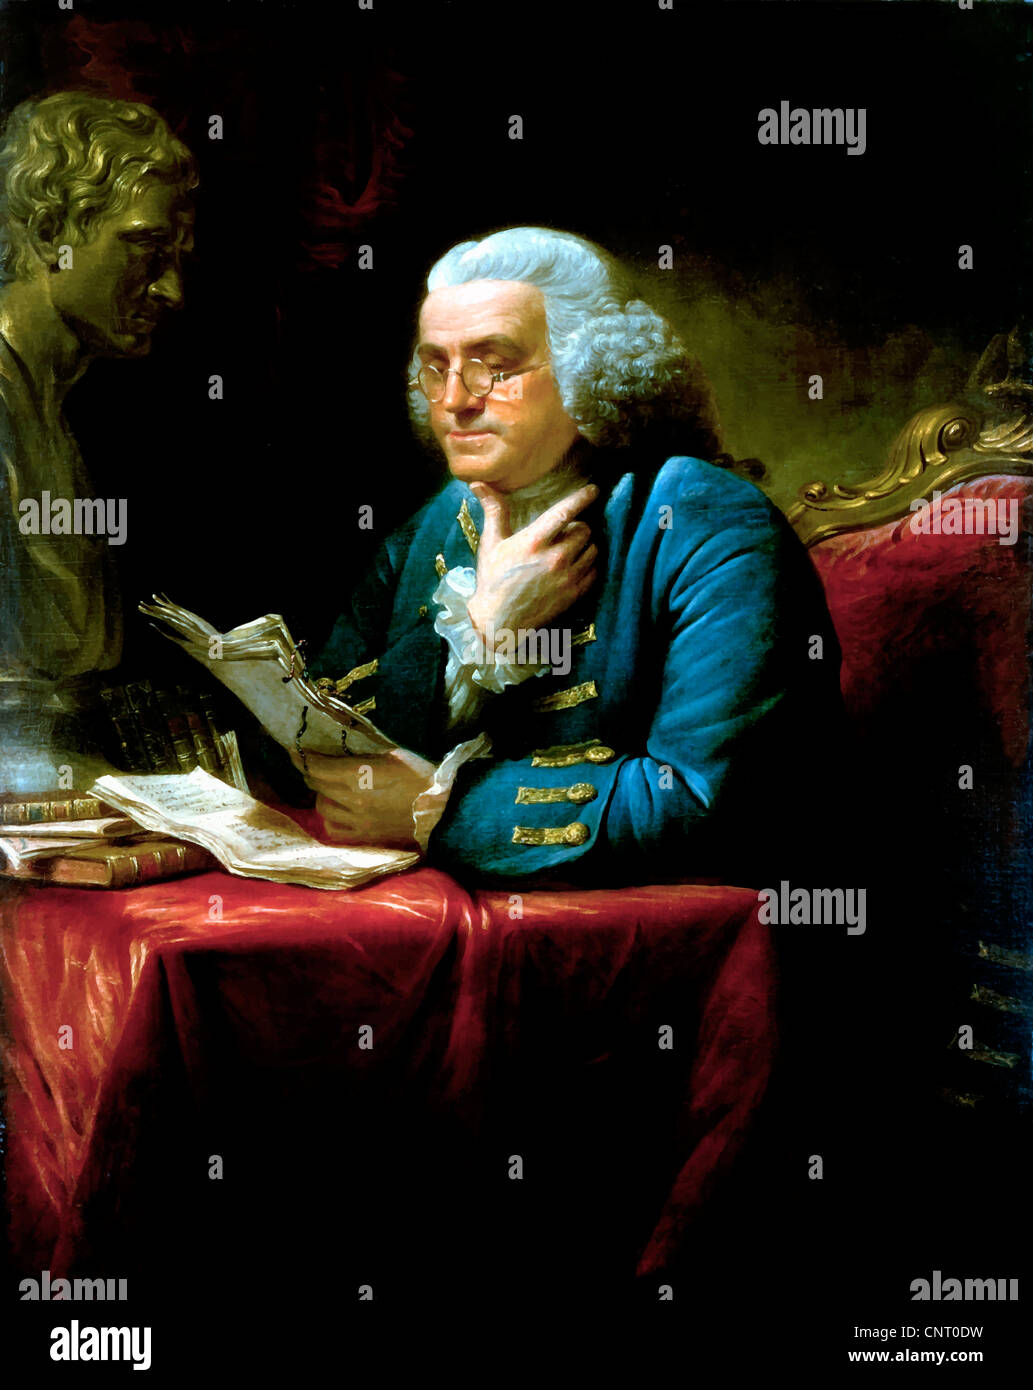 Vecteur restaurés numériquement peinture de Benjamin Franklin. Banque D'Images